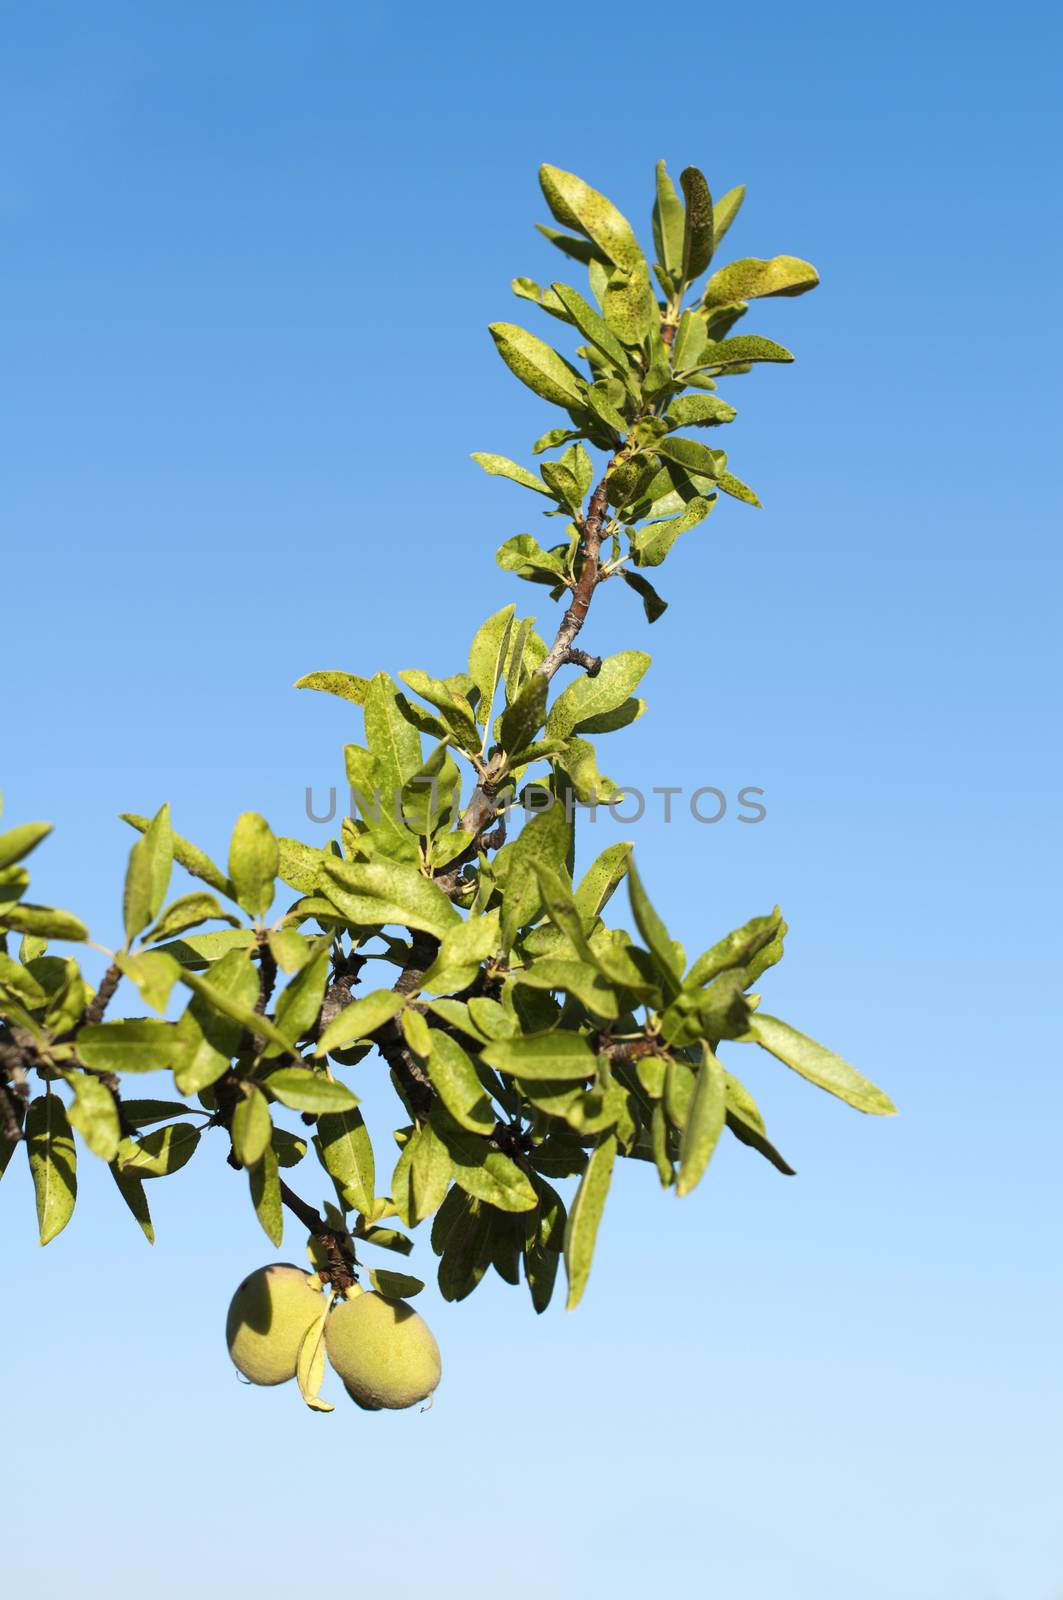 Almond fruit on the branch. Blue sky